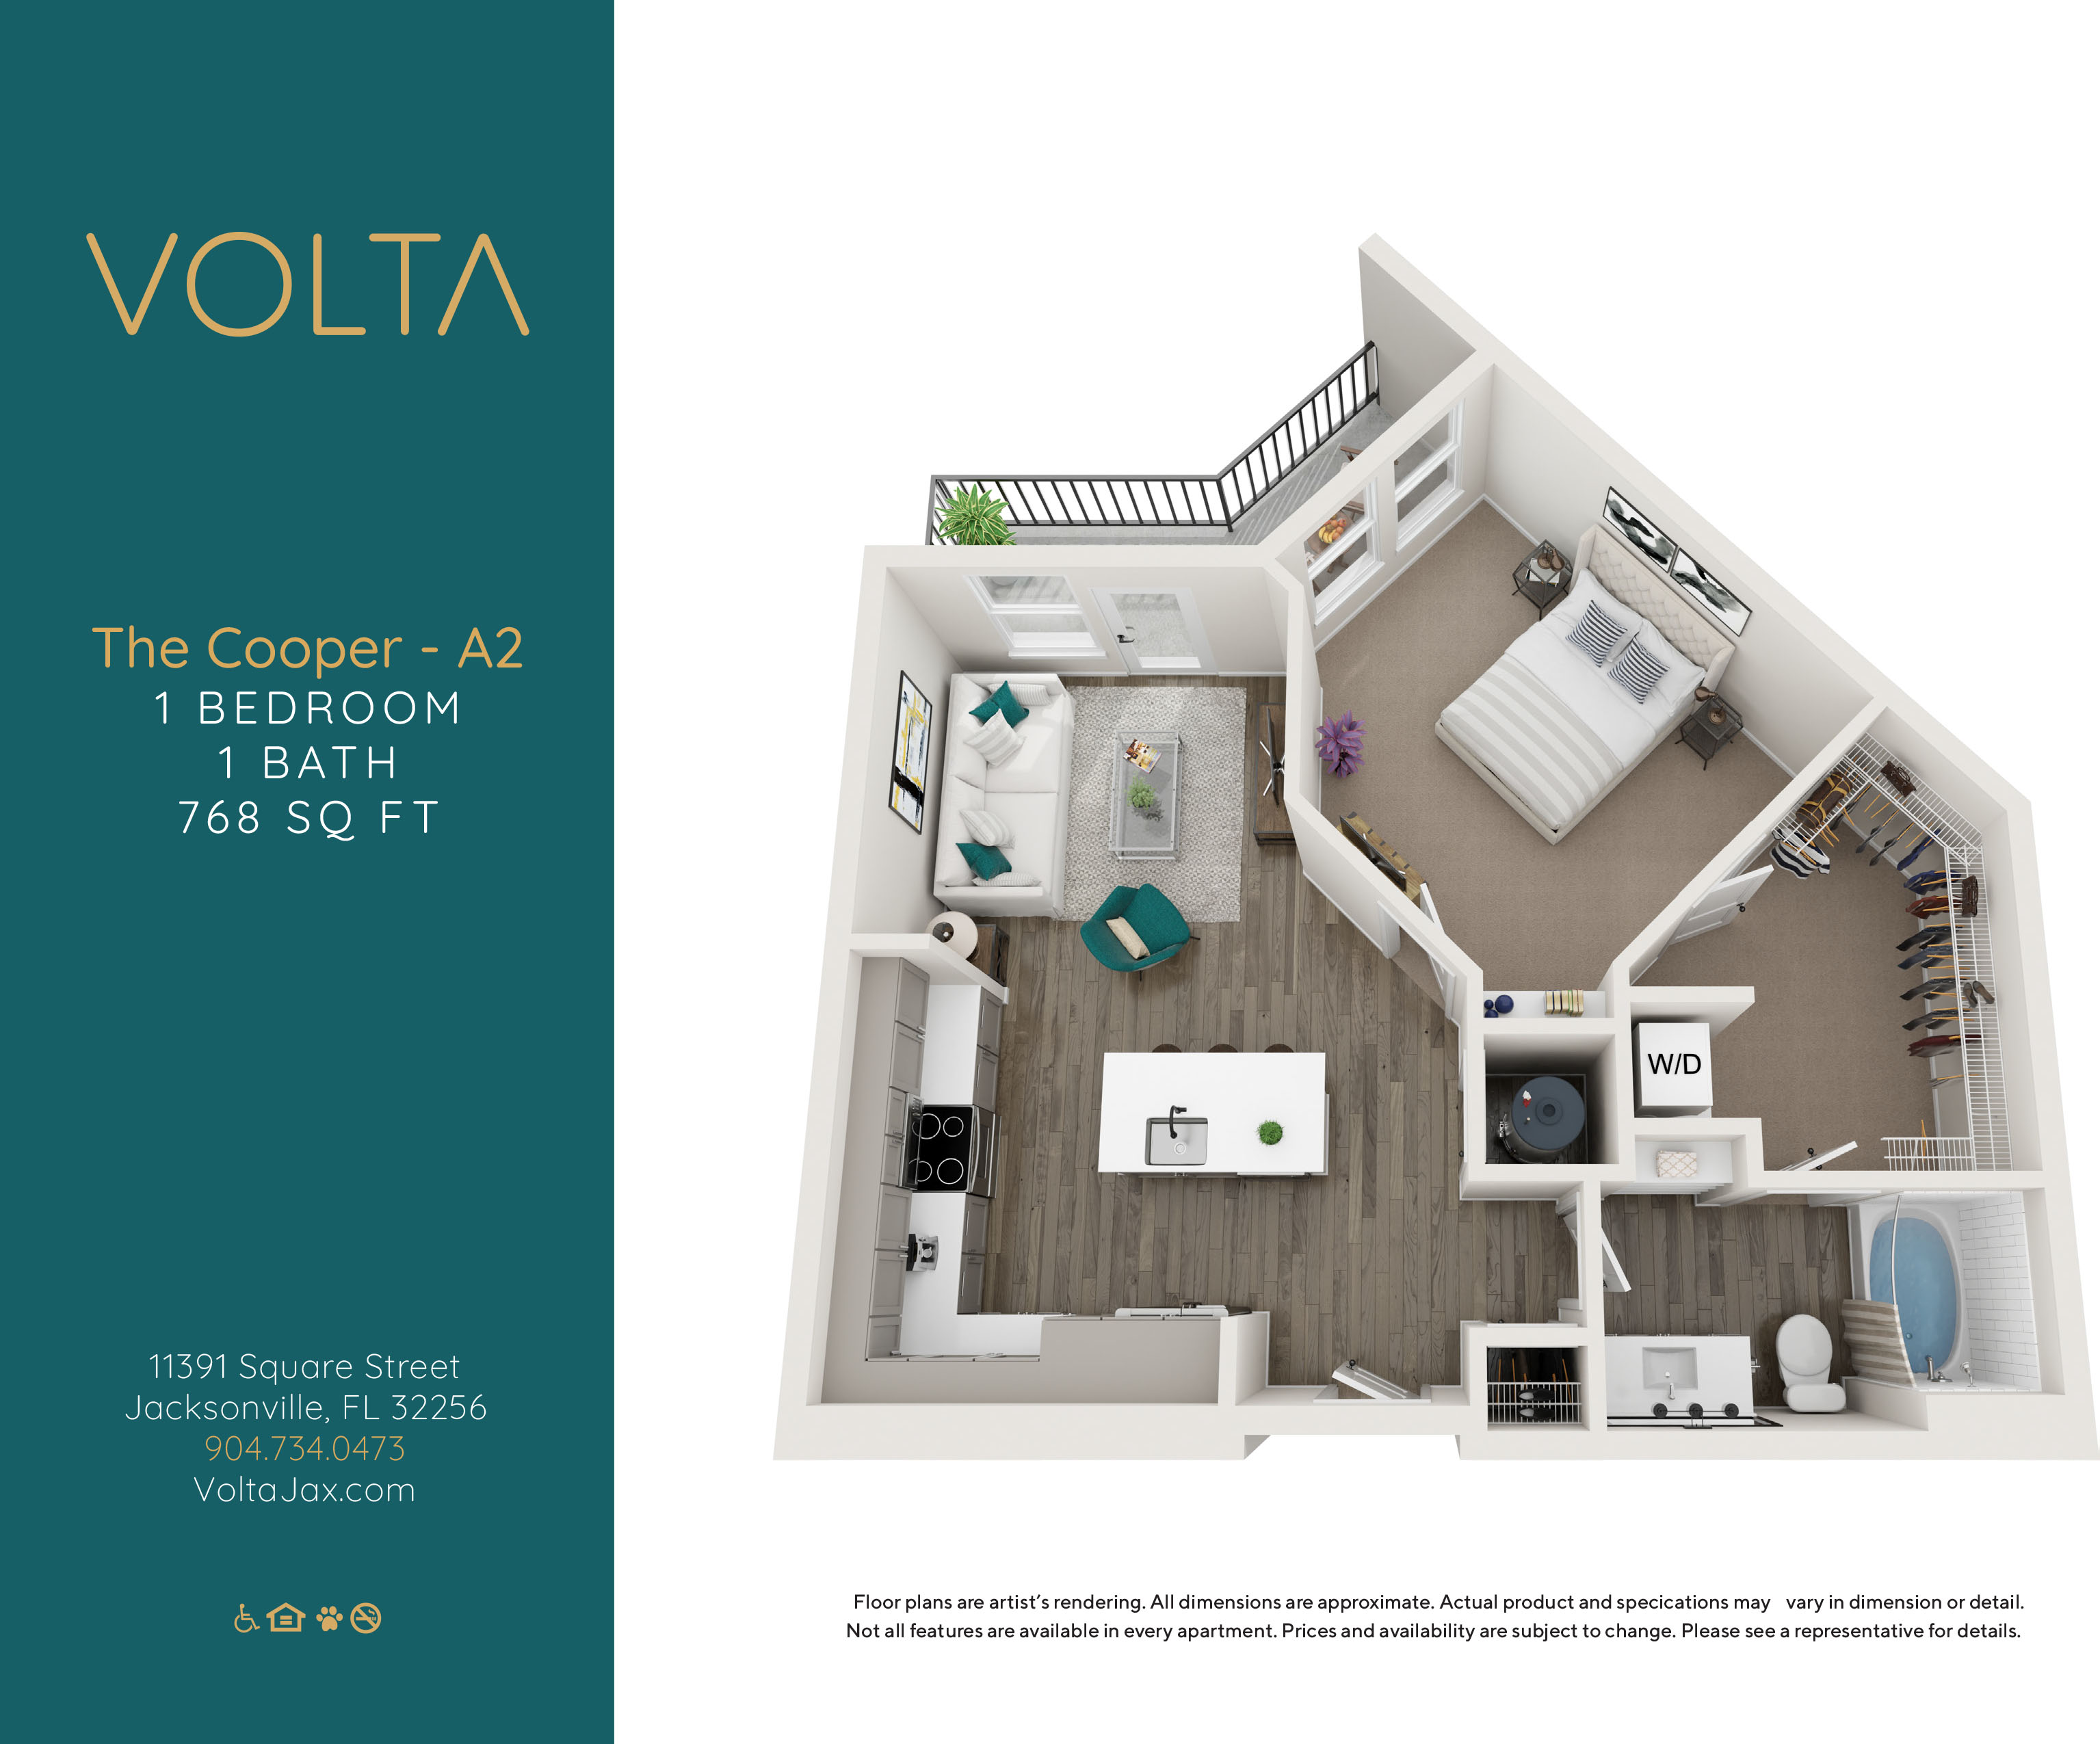 Volta - A2 - The Cooper-1